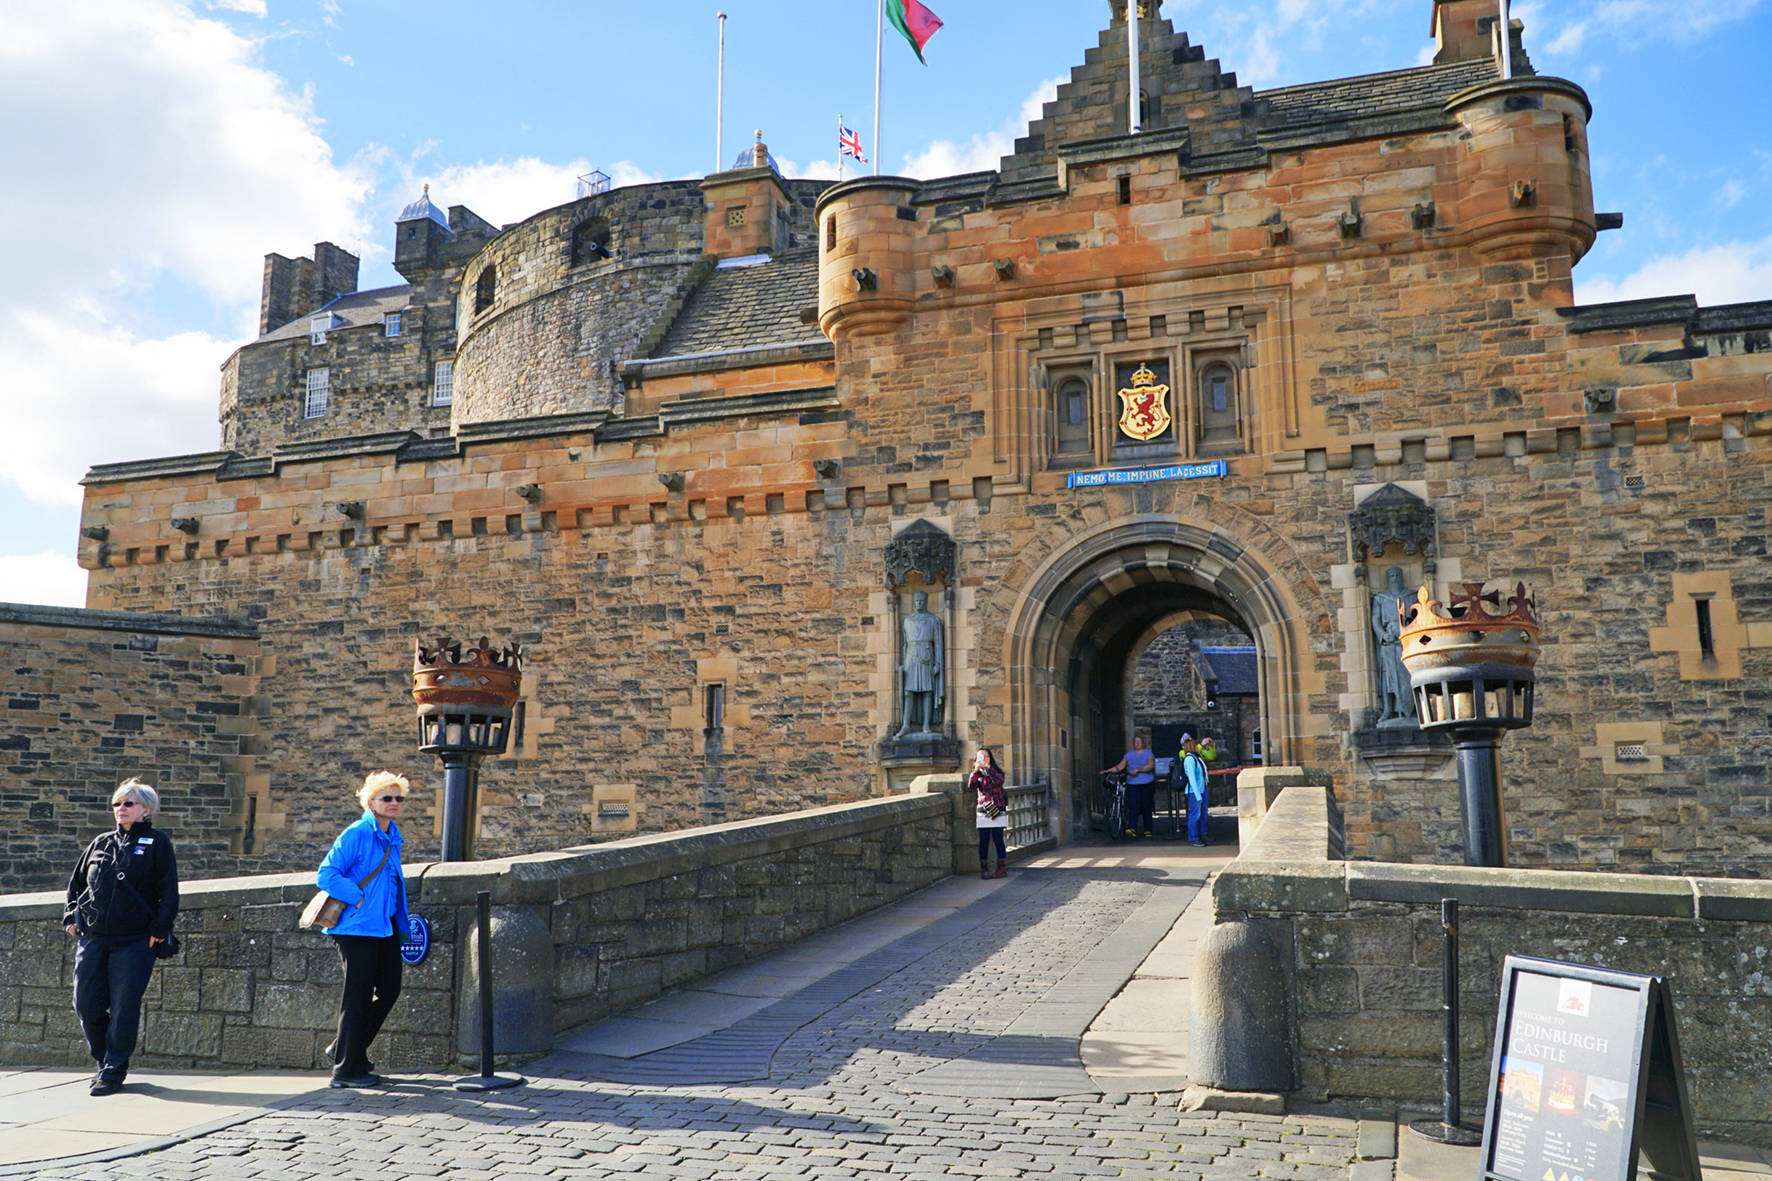 Le château d'Edimbourg - Ecosse - Vincent Halleux